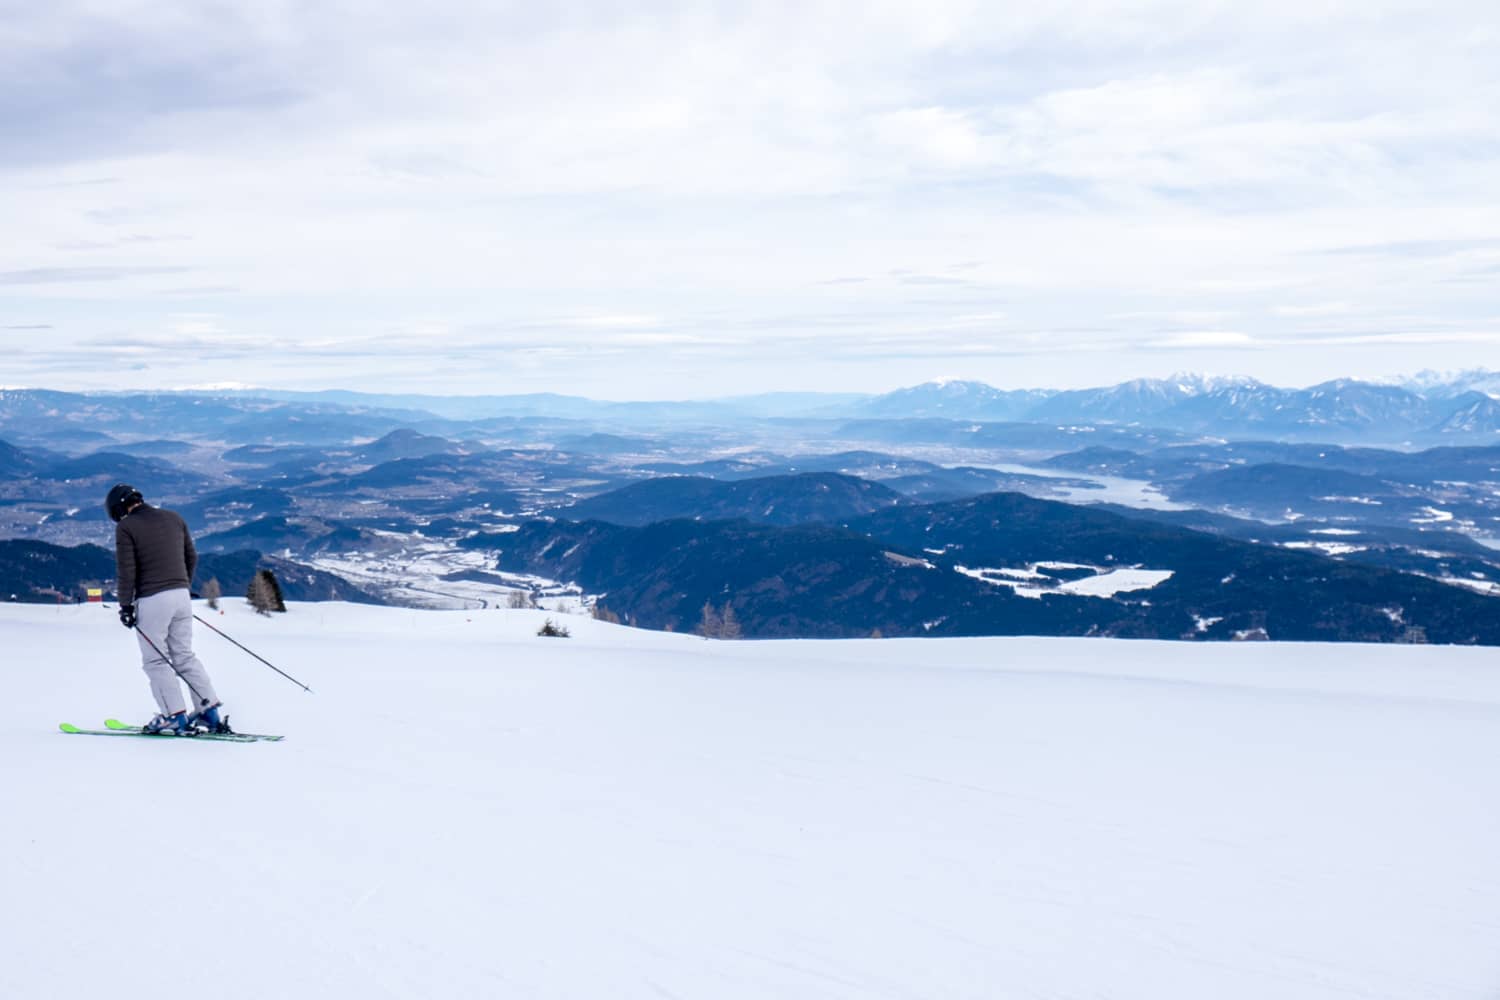 Skiing in Gerlitzen Austria, Southern Alps